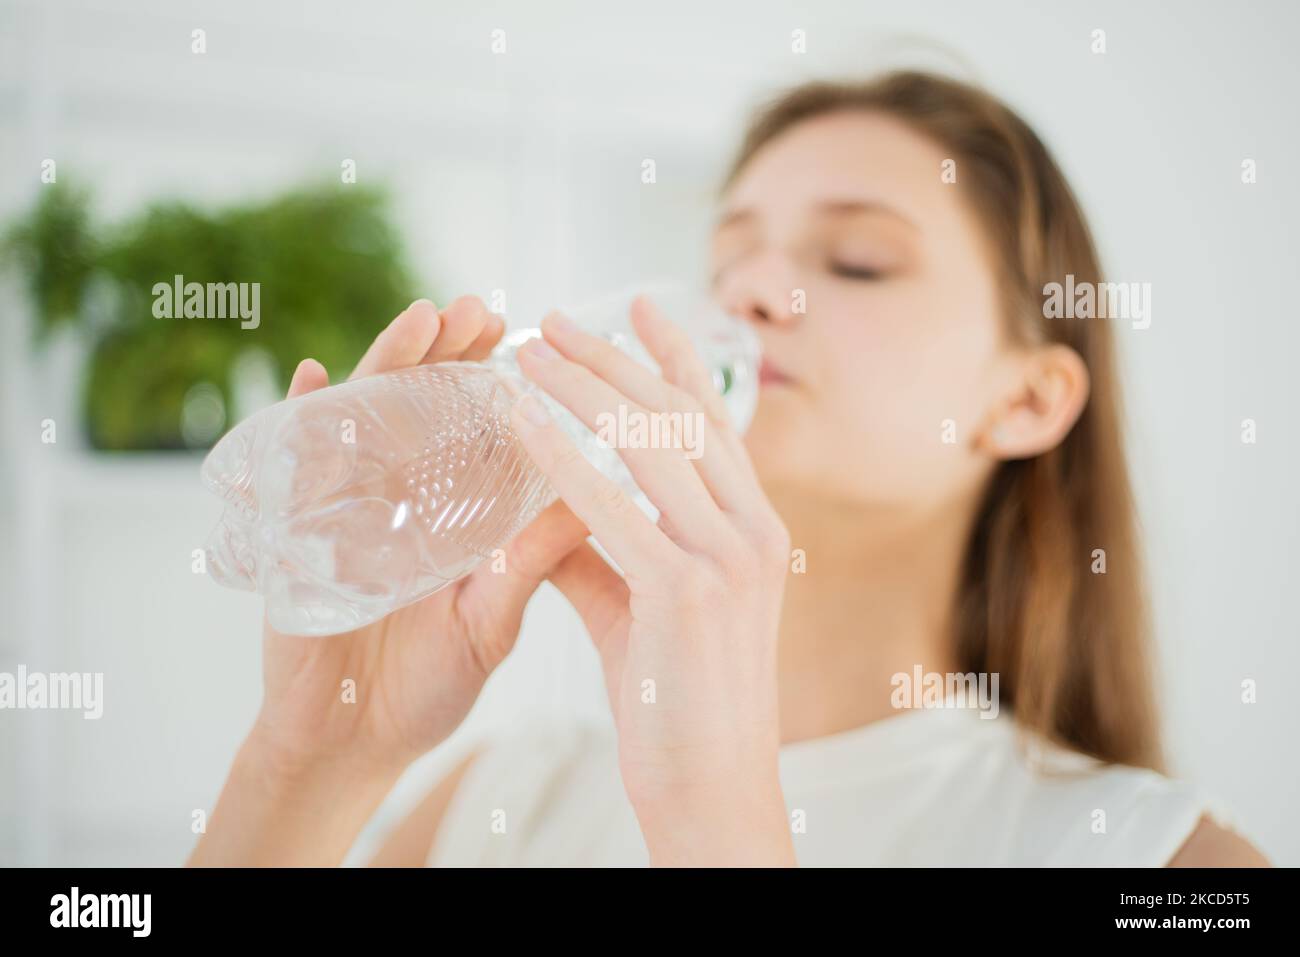 Une jeune femme adorable boit de l'eau dans une bouteille en plastique en gros plan, un mode de vie sain Banque D'Images